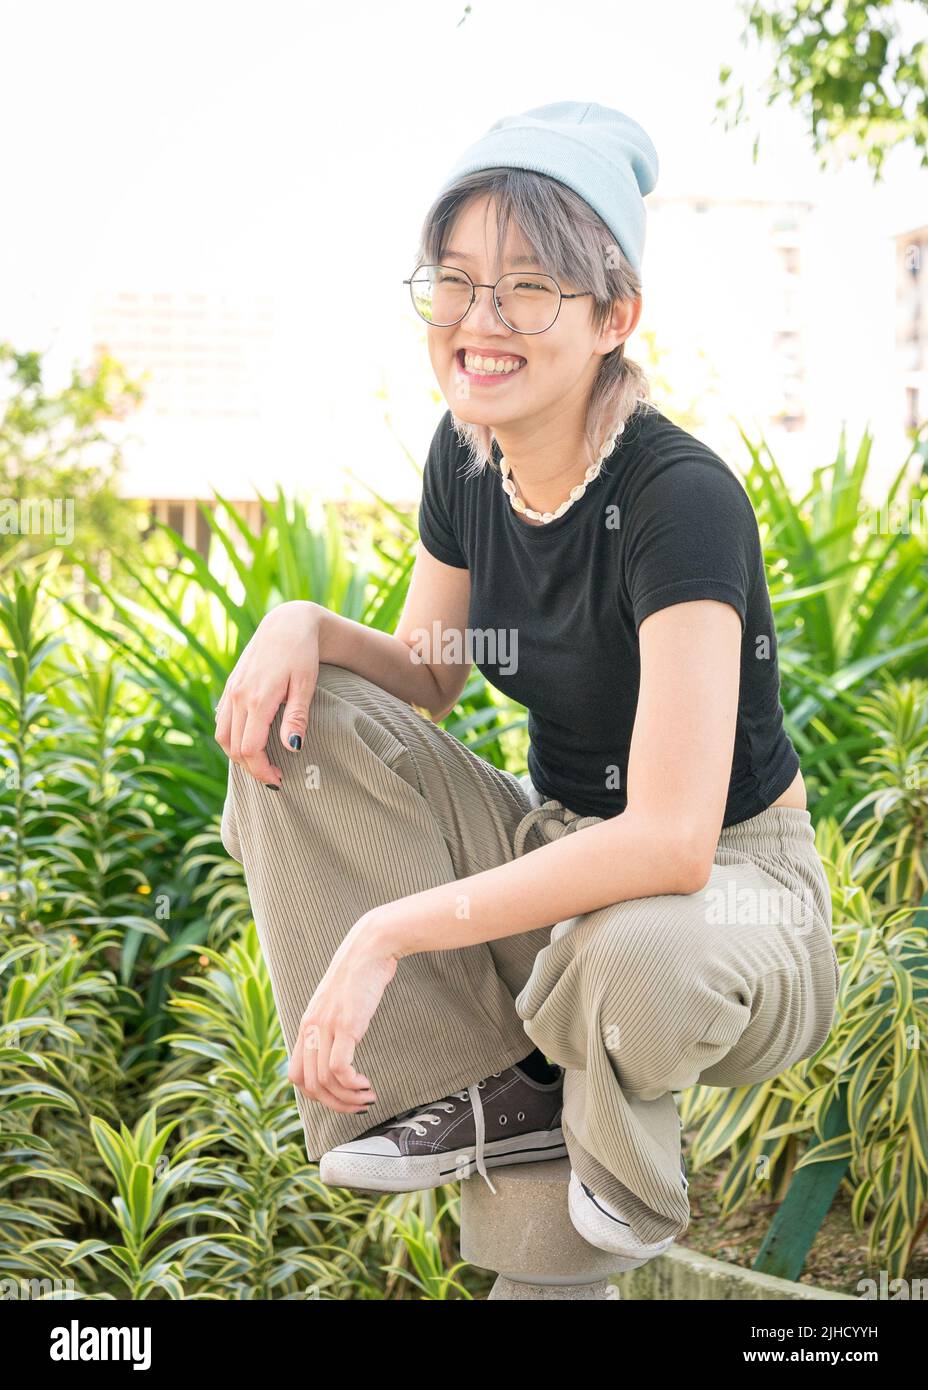 Portrait d'une jeune fille asiatique heureuse et ludique. Banque D'Images